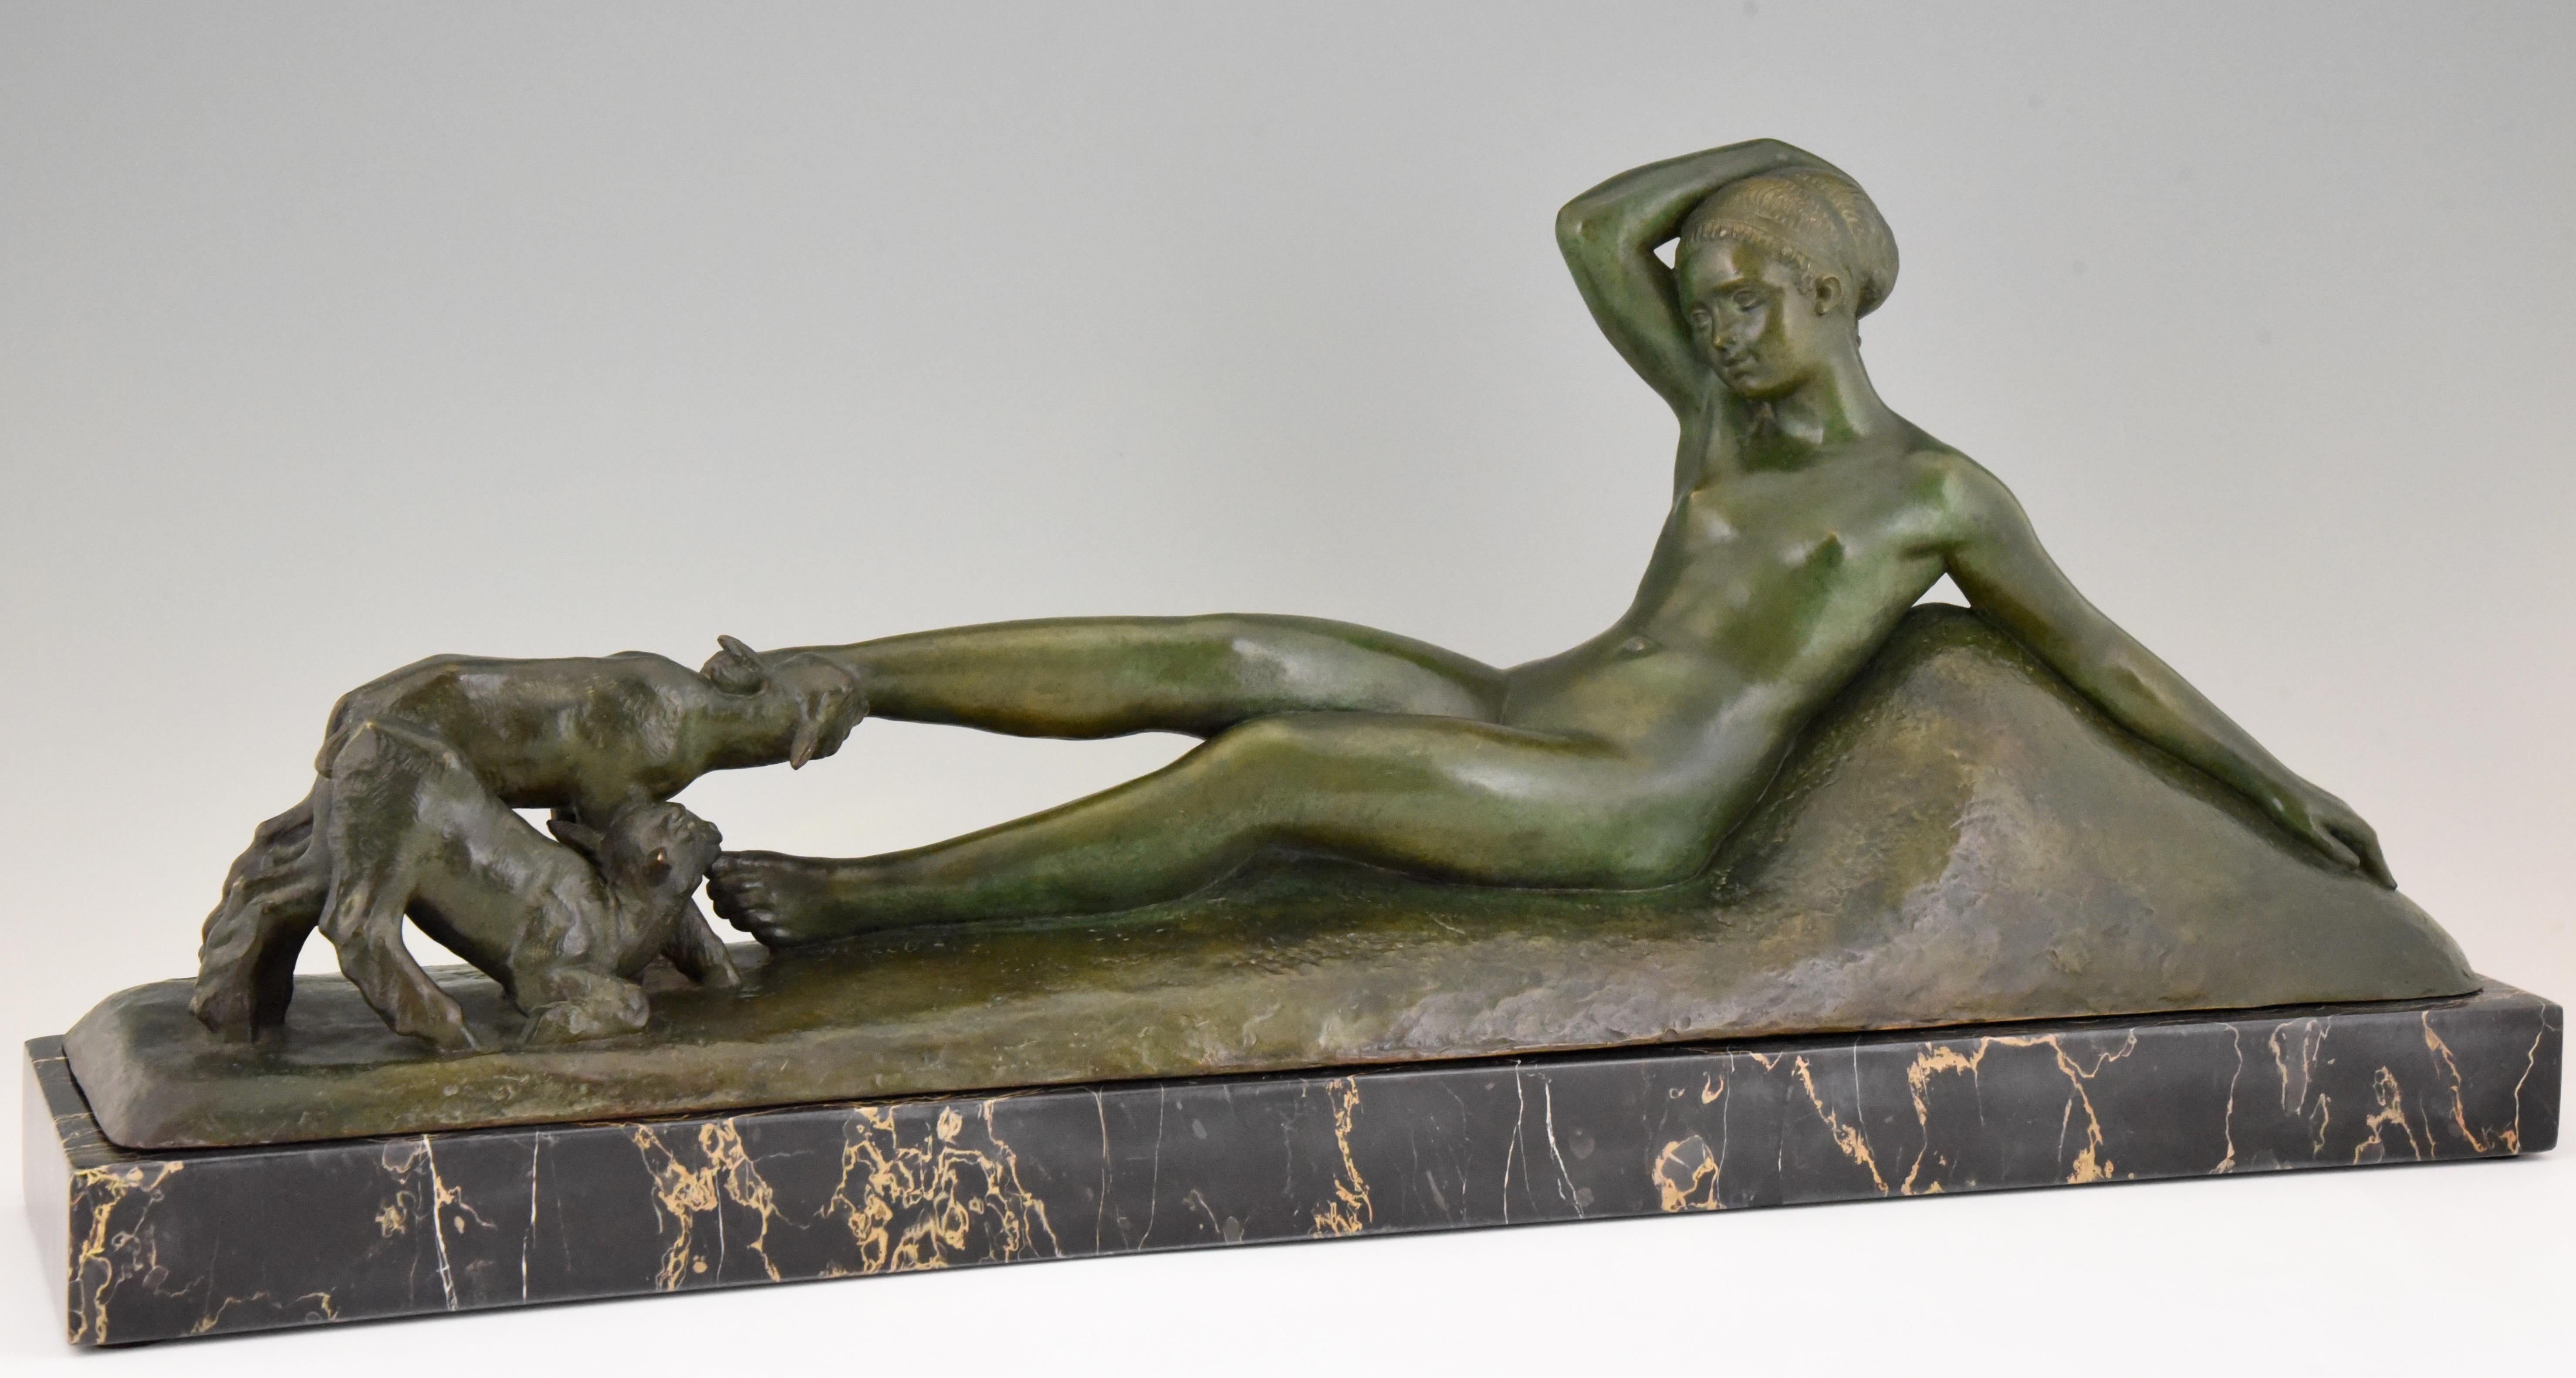 Beeindruckende Art-déco-Bronzeskulptur eines liegenden Aktes, der mit zwei Ziegen spielt. Signiert von dem französischen Künstler Georges Gori, mit der Gießereimarke La Pointe, Wachsausschmelzverfahren, cire perdue. Die Bronze hat eine schöne grüne